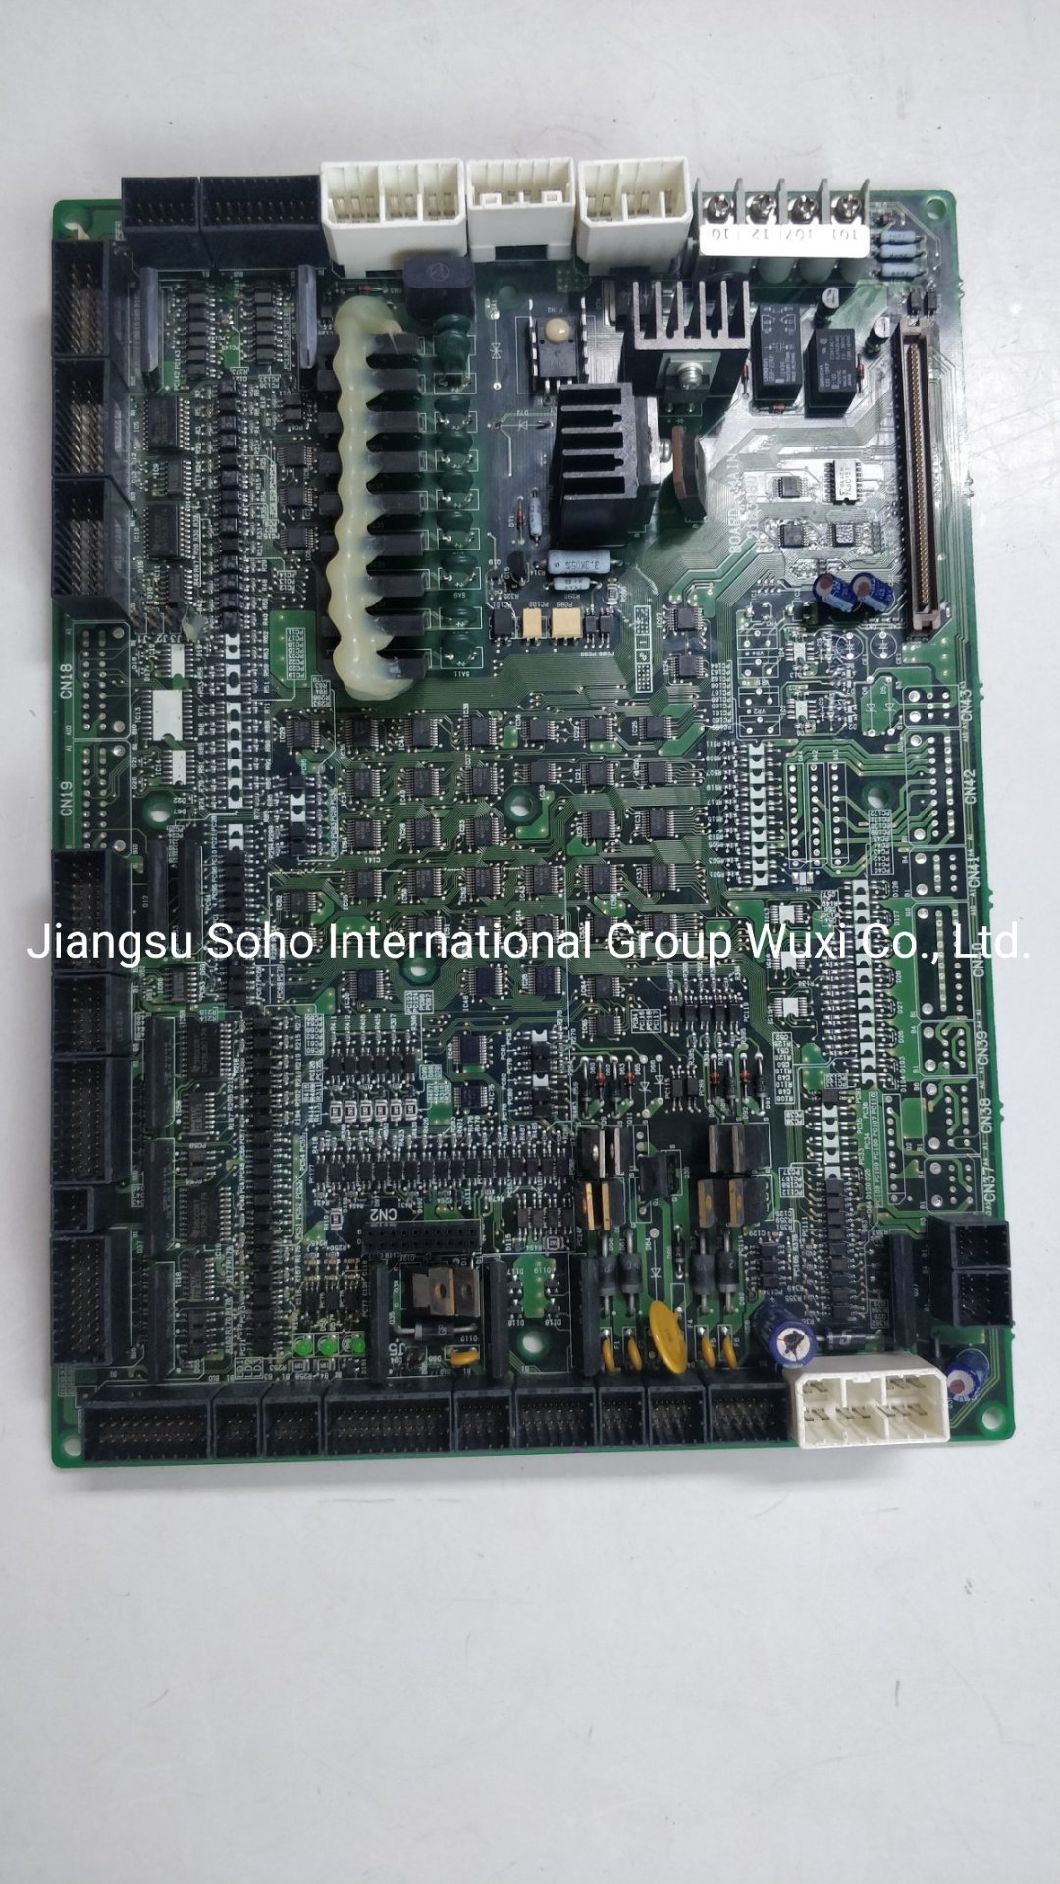 Toyota Jat710 Main Board A1 J9201-20000-0d